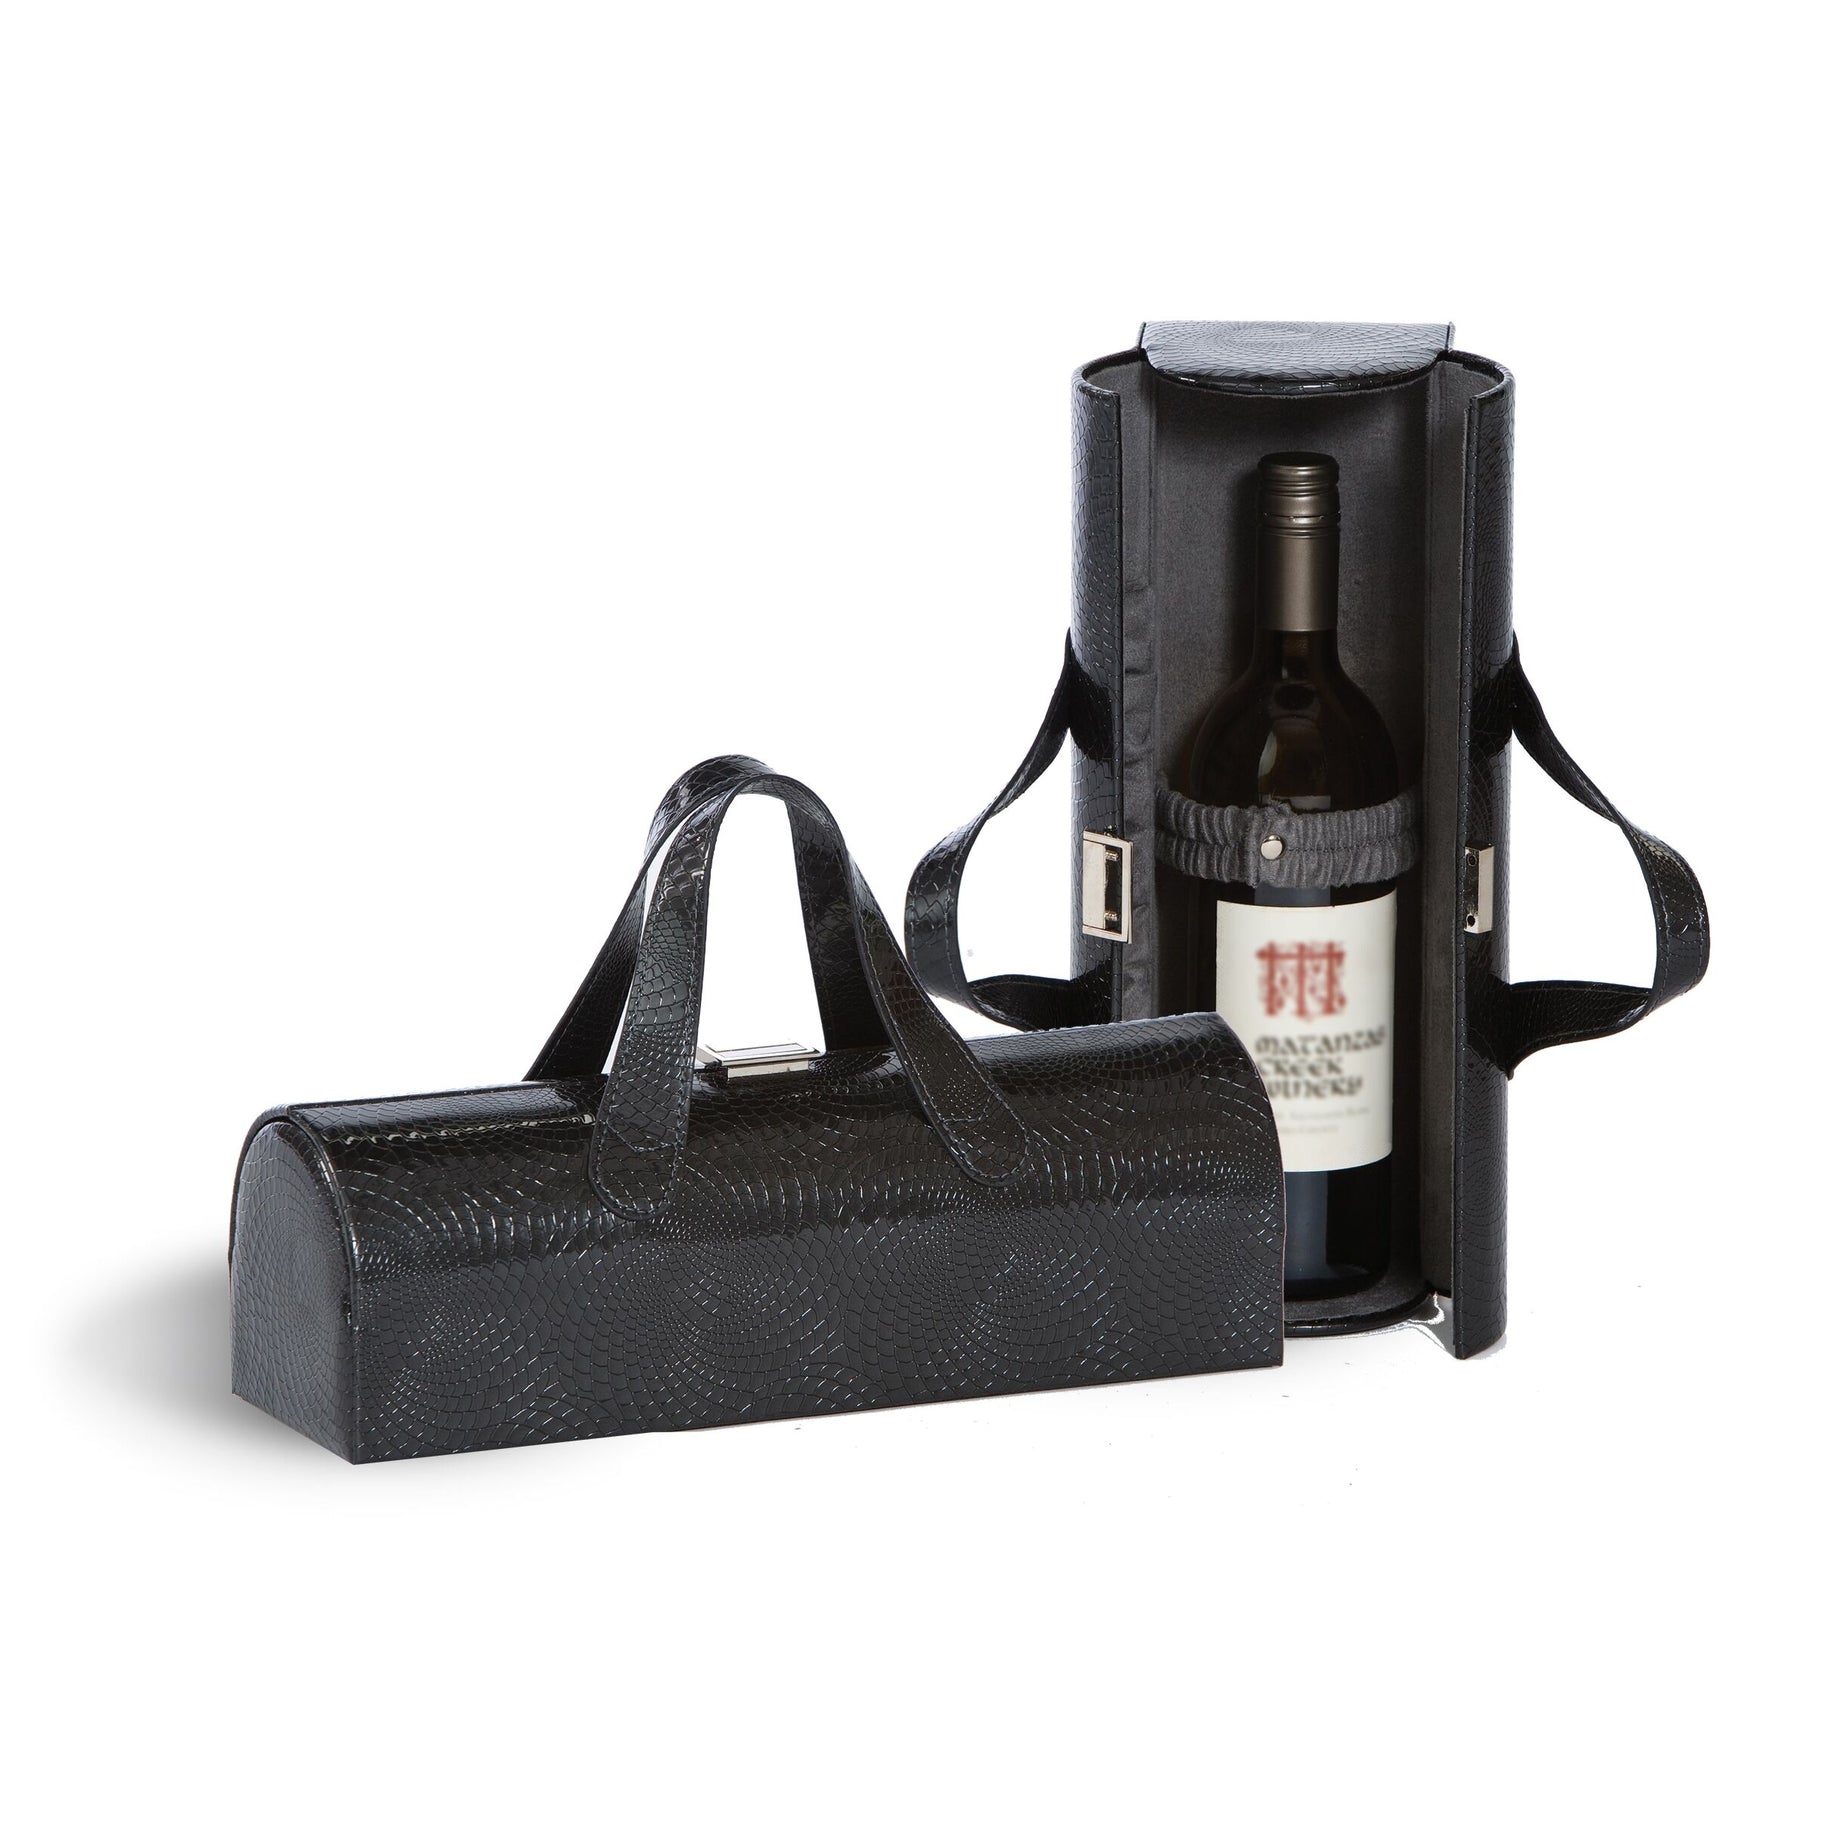 8 Oak Lane Wine Bottle Carrying Clutch Bag